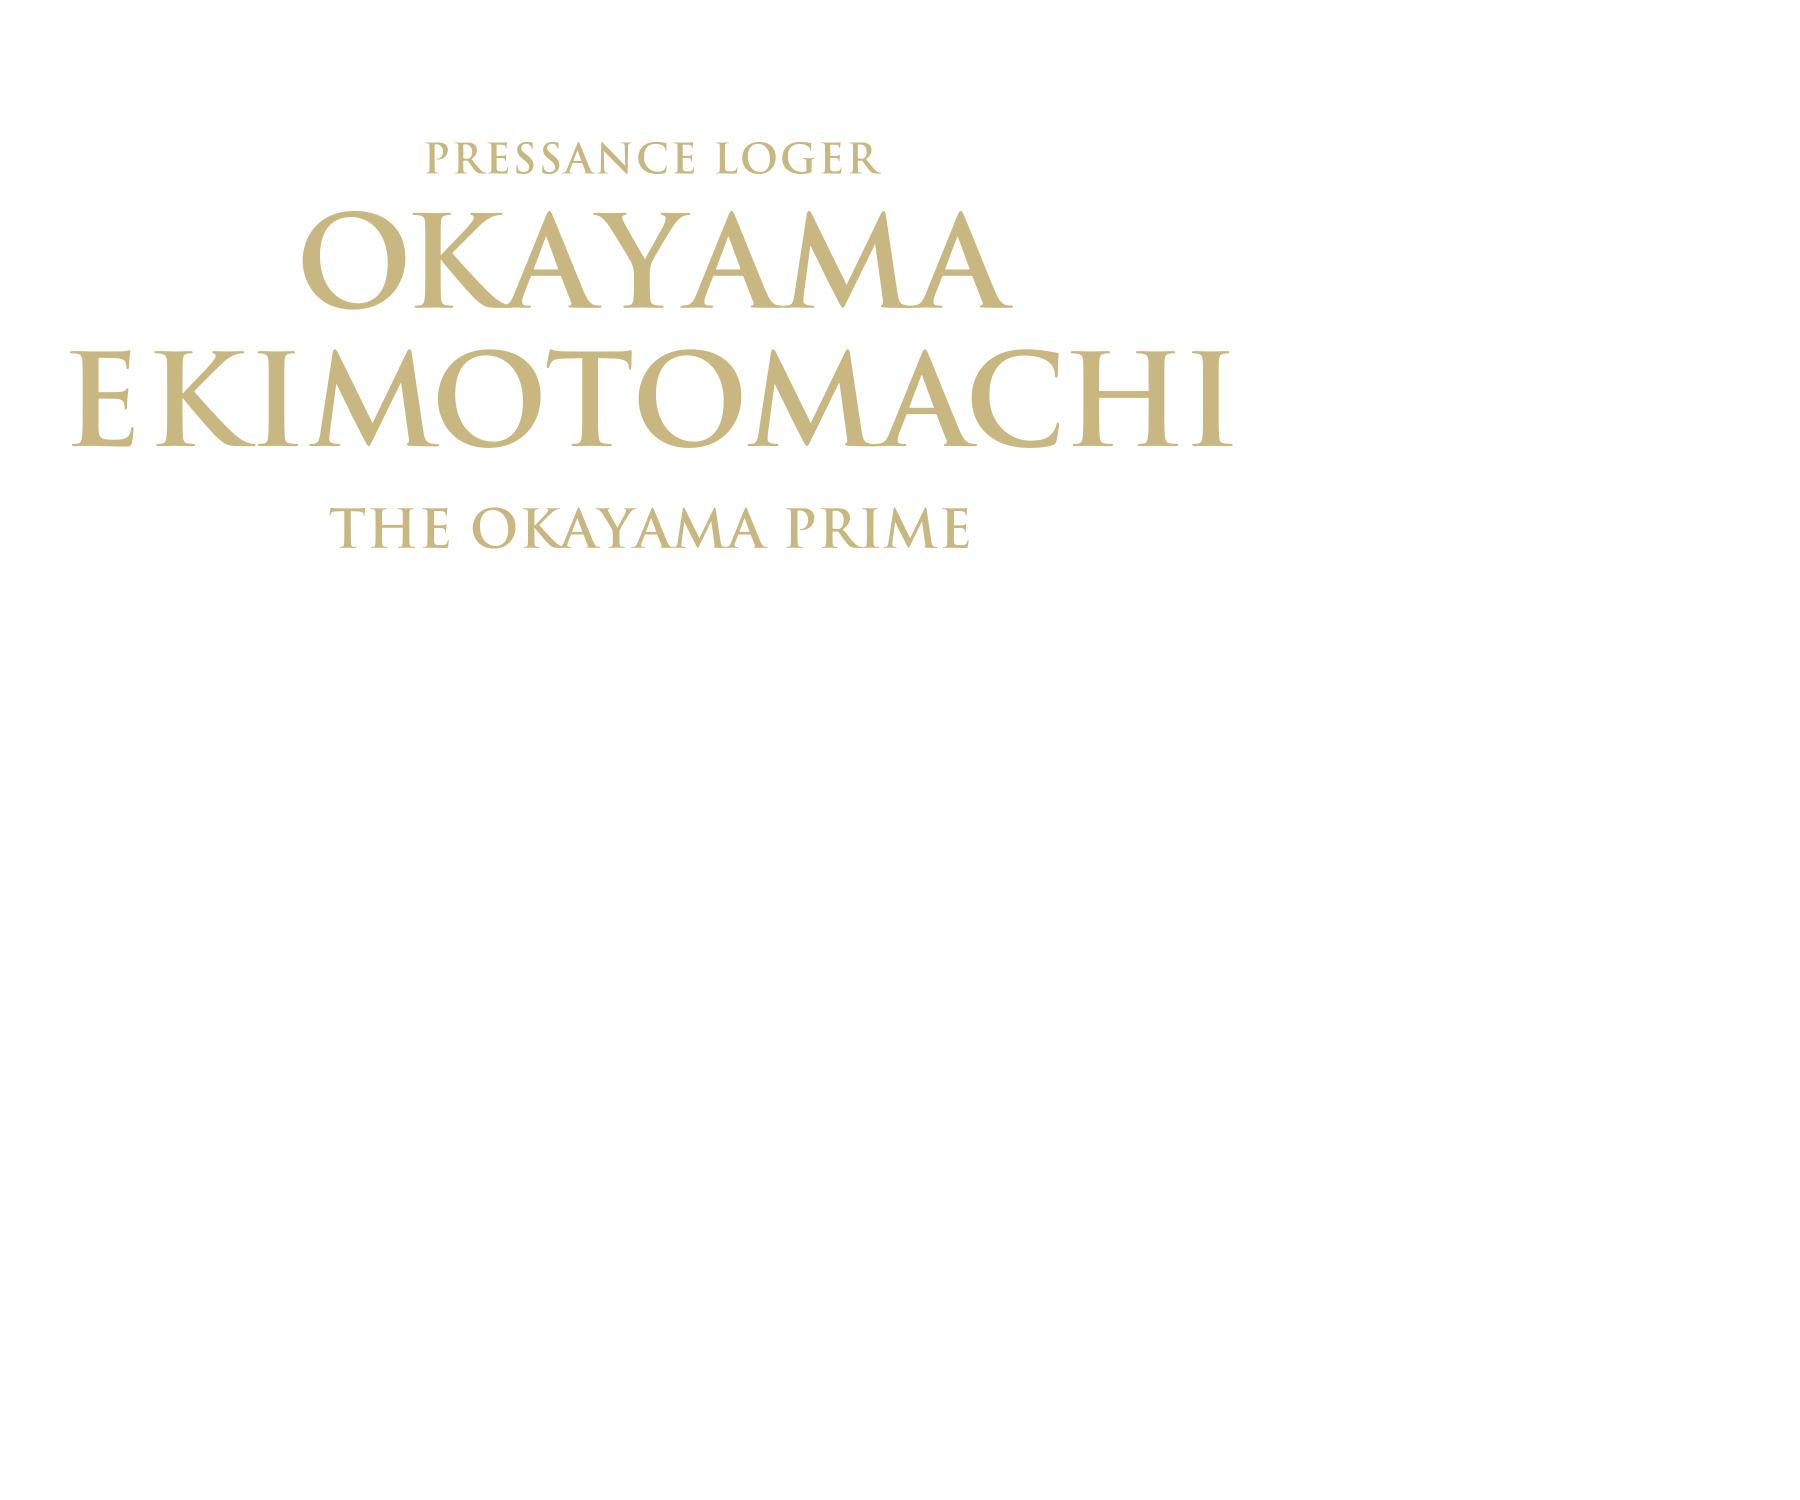 THE OKAYAMA PRIME